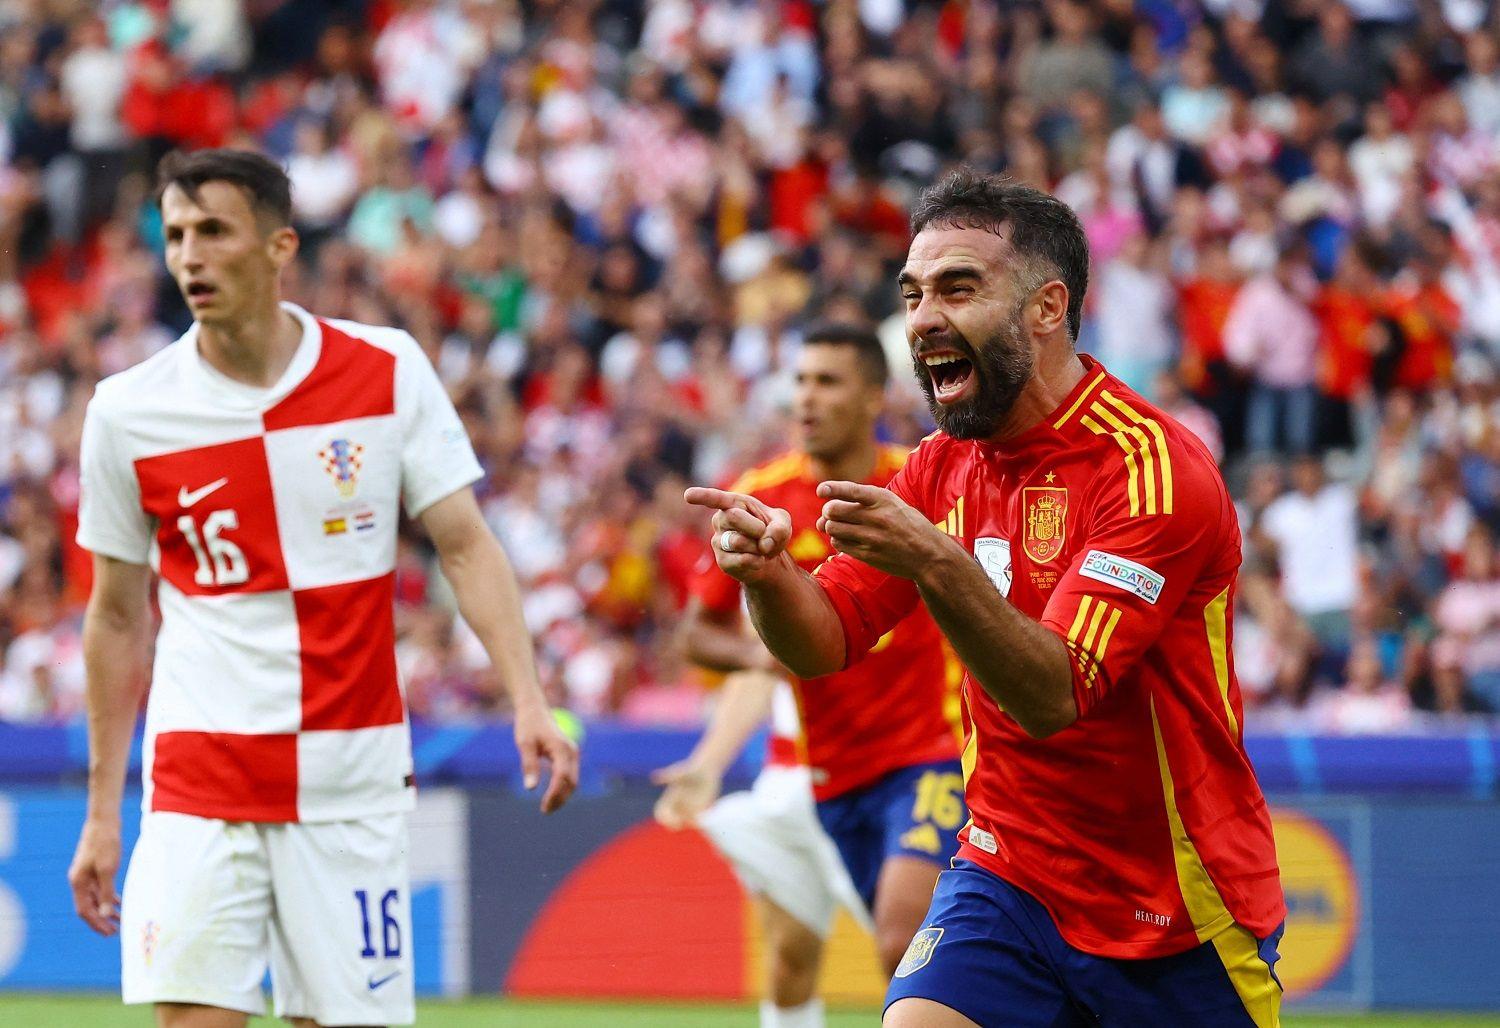 الماتادور الإسباني يكتسح كرواتيا بثلاثية نظيفة في كأس أوروبا